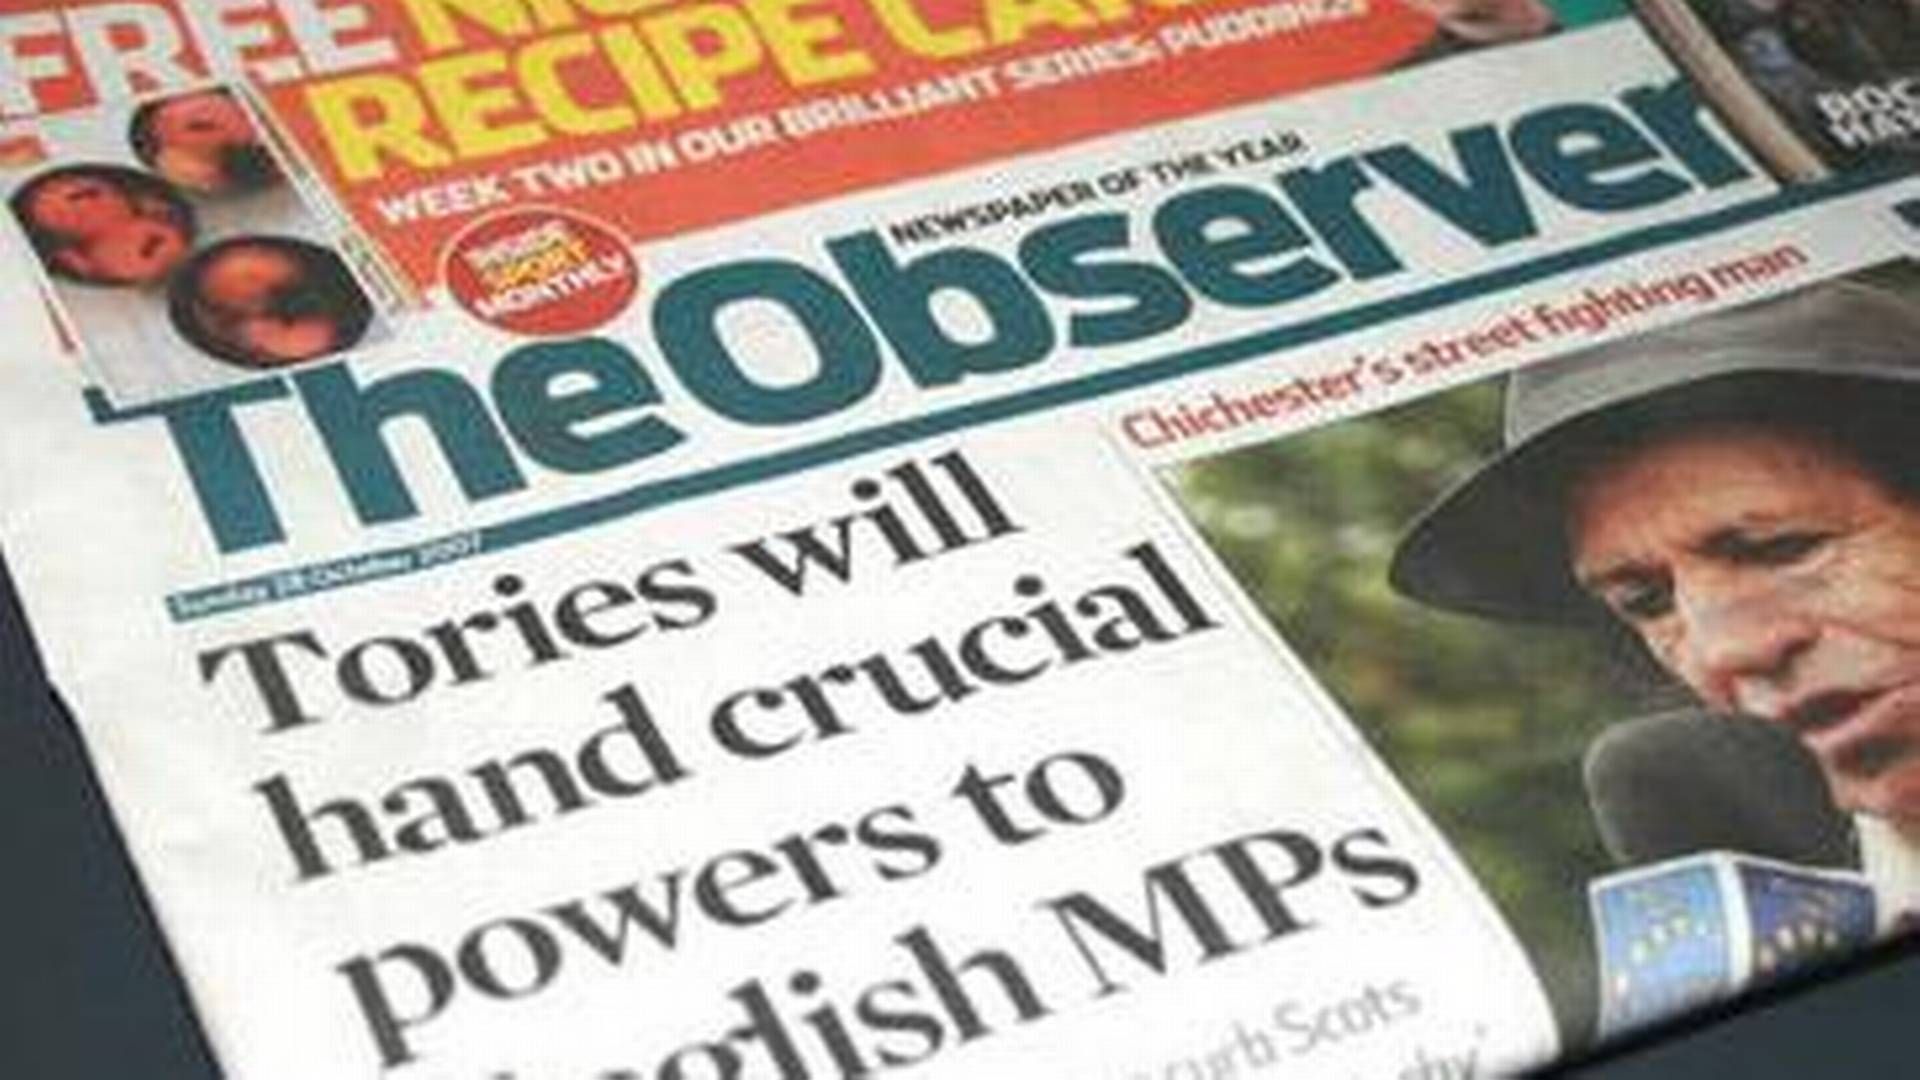 The Observer var blandt vinderne af European Press Prize for bedste kommentator